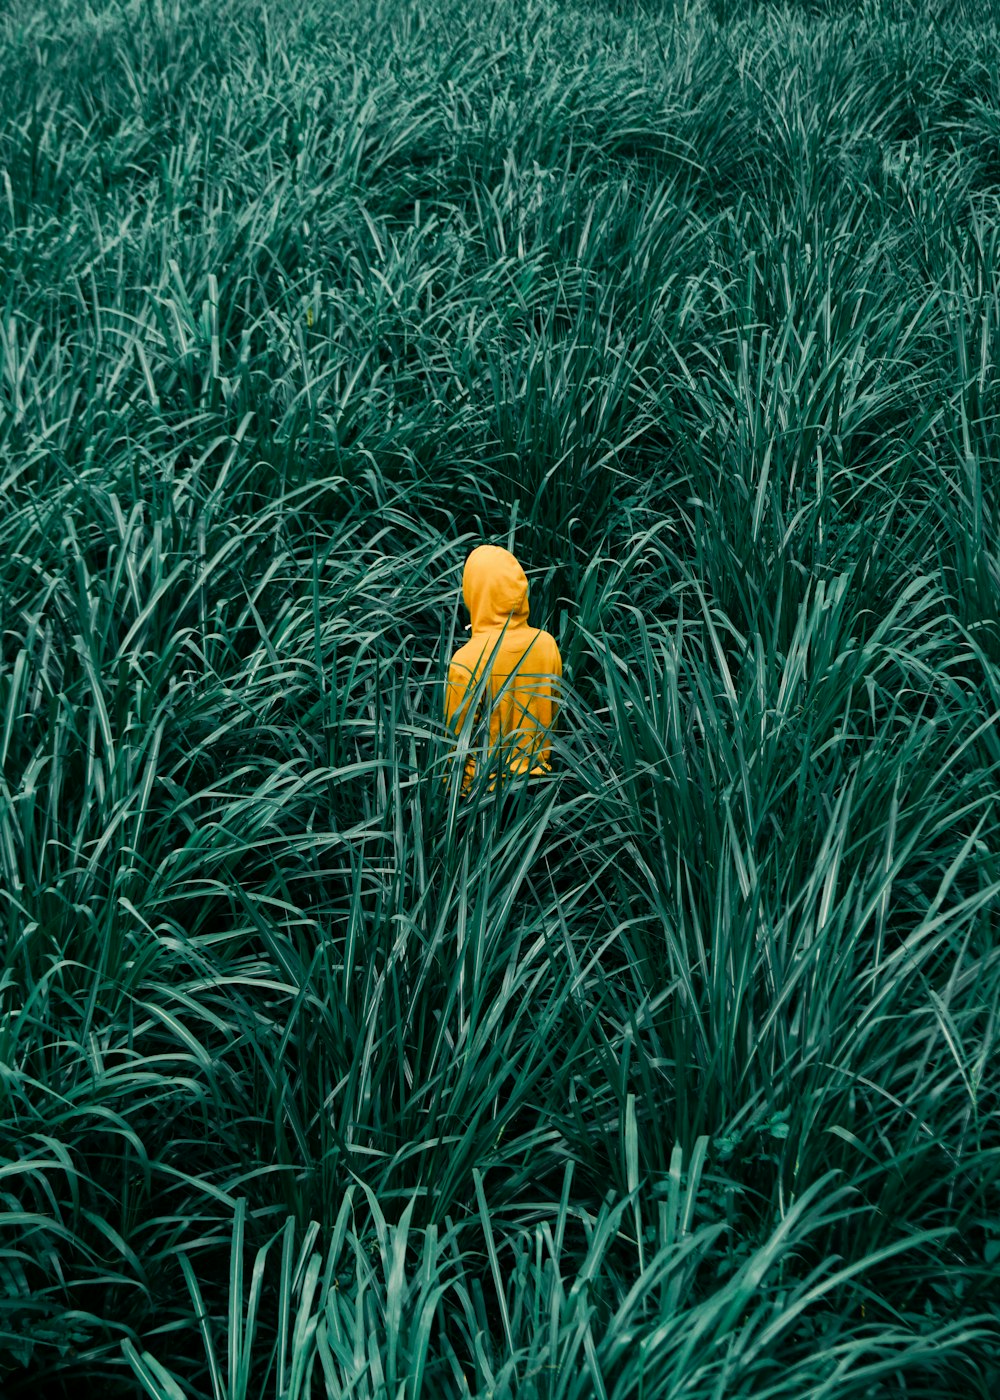 person wearing orange hooded jacket in in green grass field